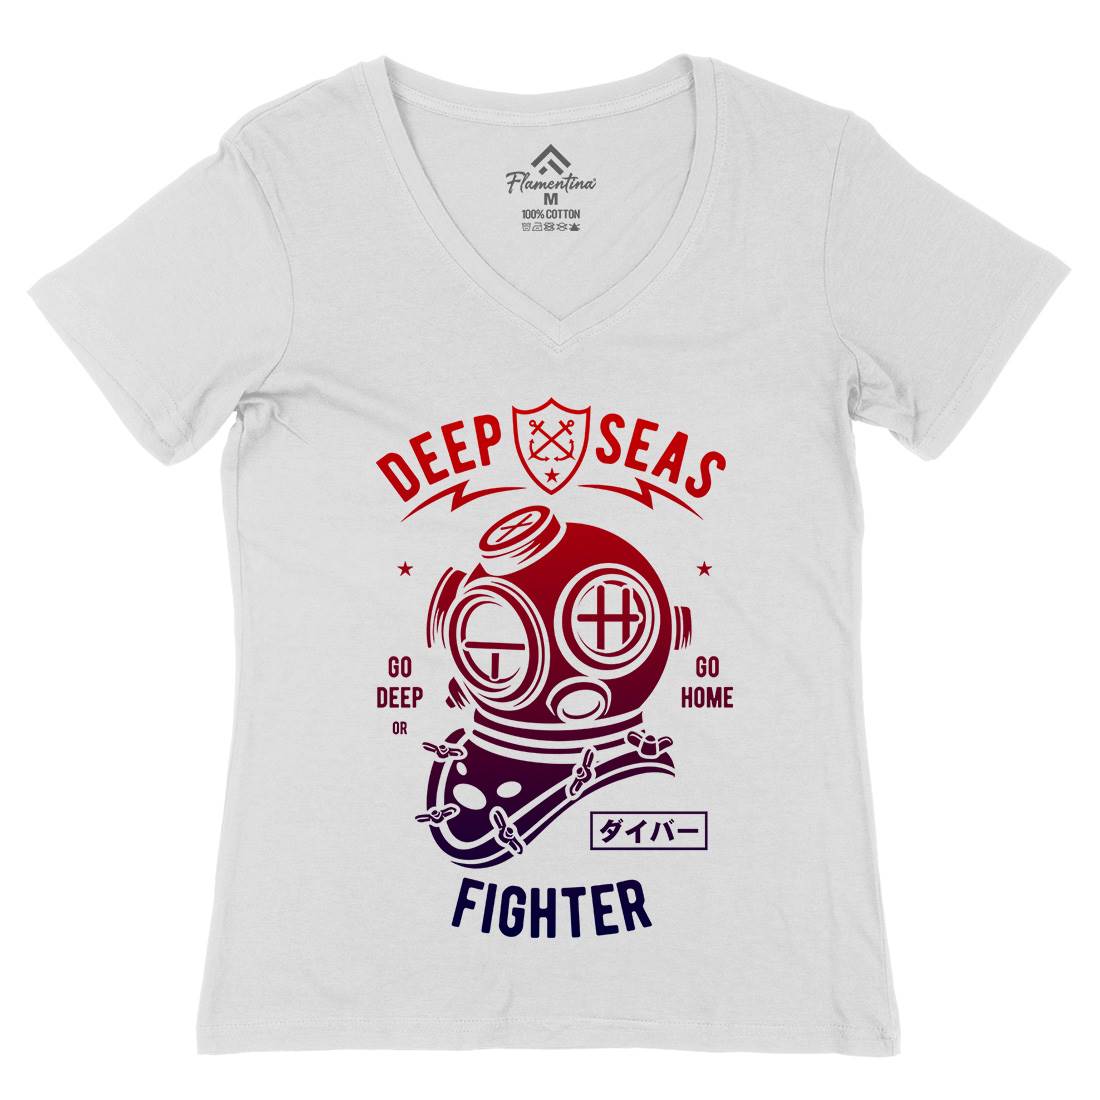 Deep Seas Fighter Womens Organic V-Neck T-Shirt Navy A223